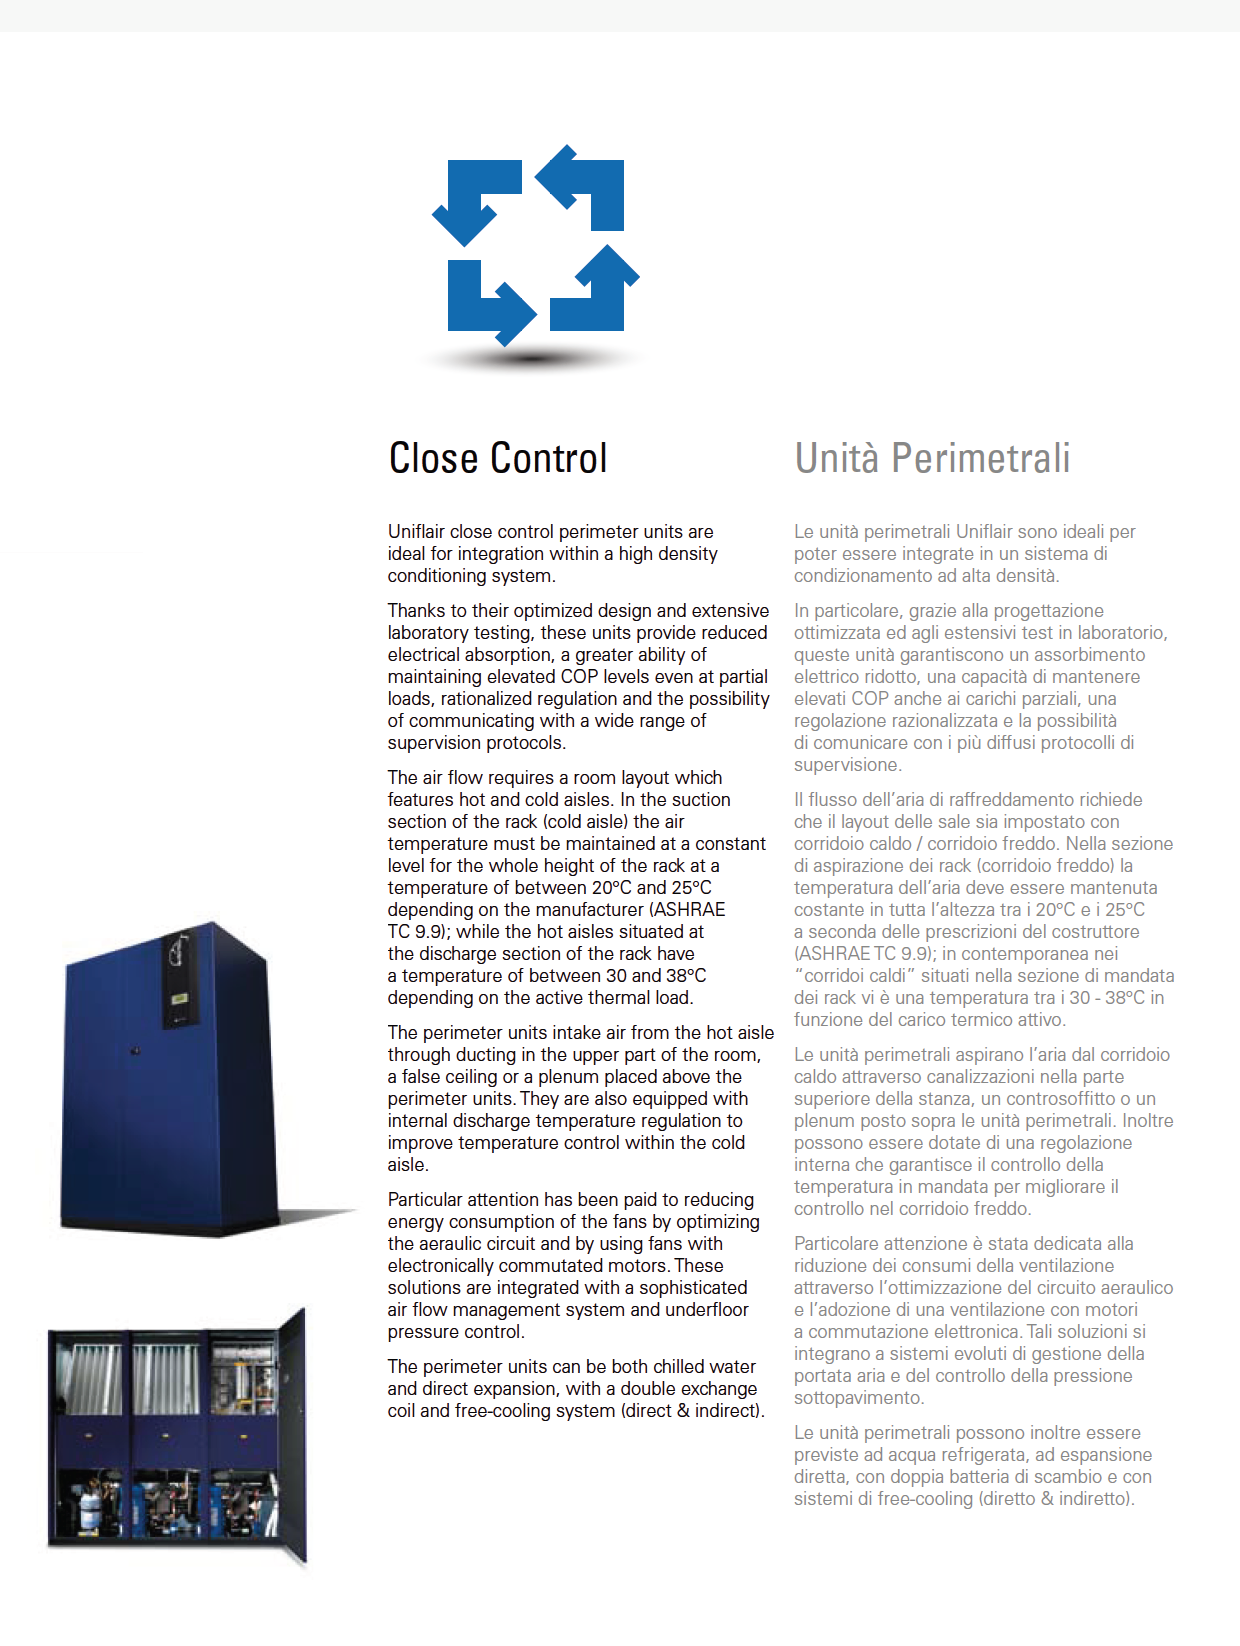 Close Control Uniflair Close Control vakioilmastointikoneet ovat ideaalinen ratkaisu integroitavaksi suuritehoisiin jäähdytysjärjestelmiin.